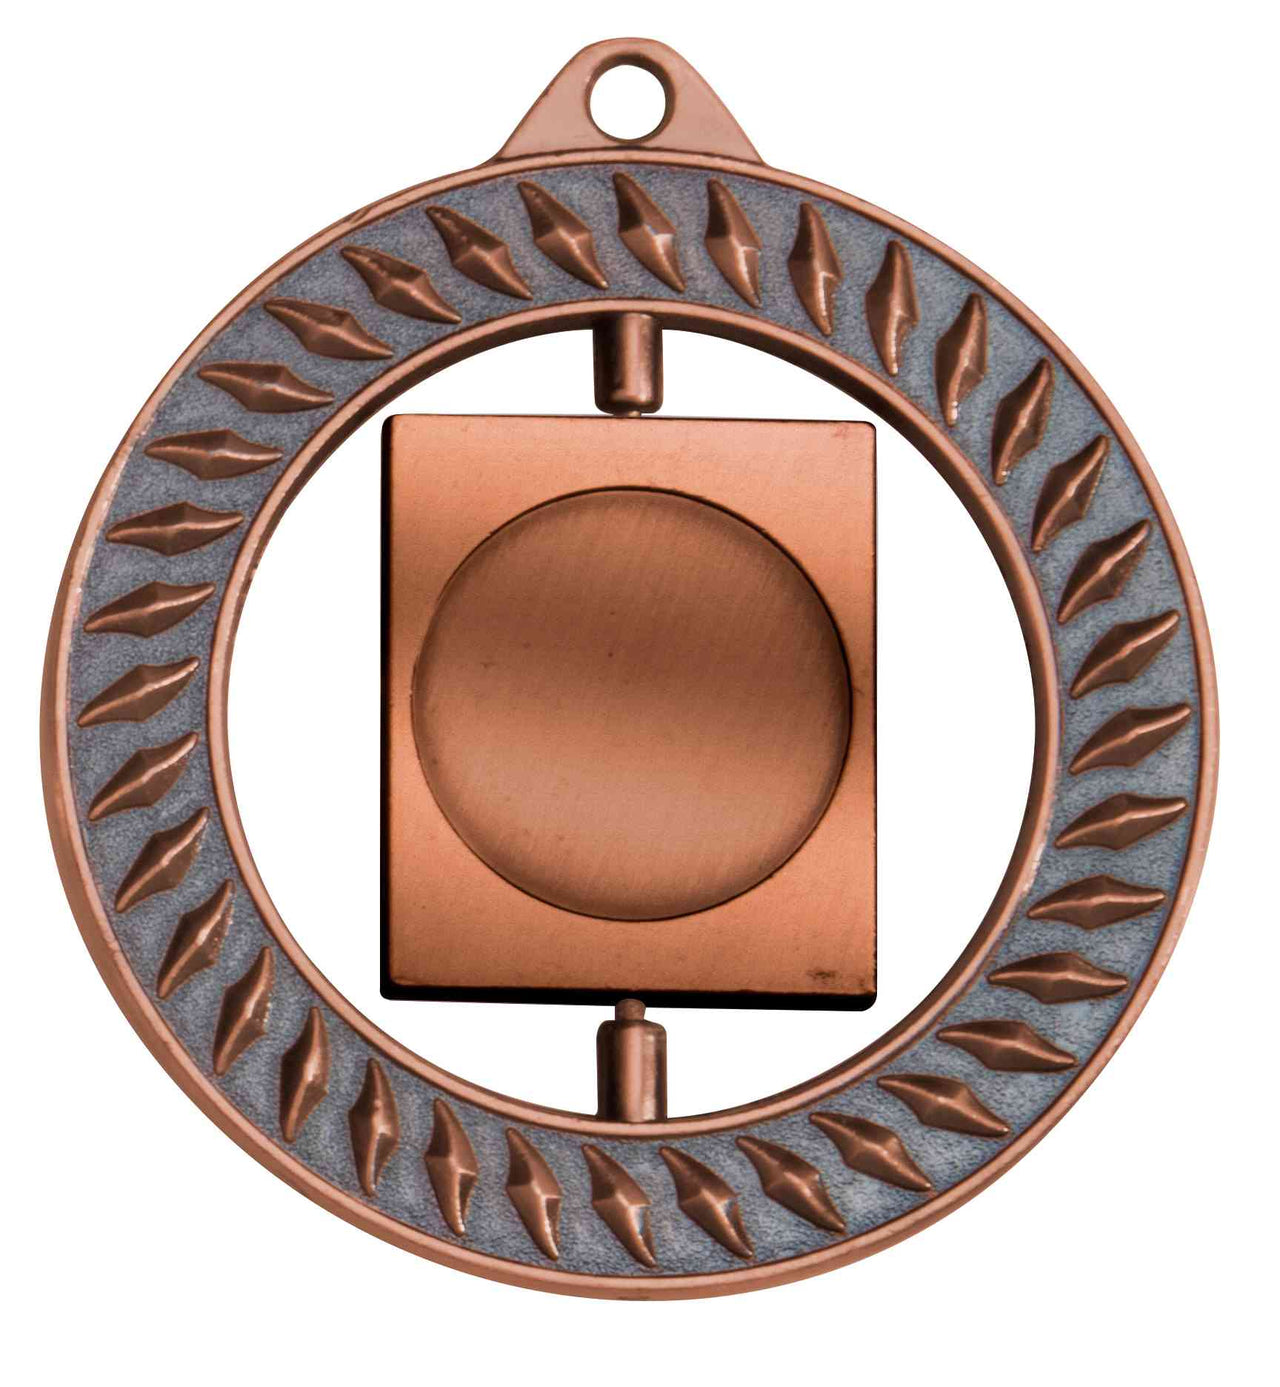 Kupferfarbener dekorativer Wandhalter Medaillen Regensburg 70 mm PK79320g-E25 mit Blattmuster und einem quadratischen Ehrenpreis-Rahmen in der Mitte von POMEKI.